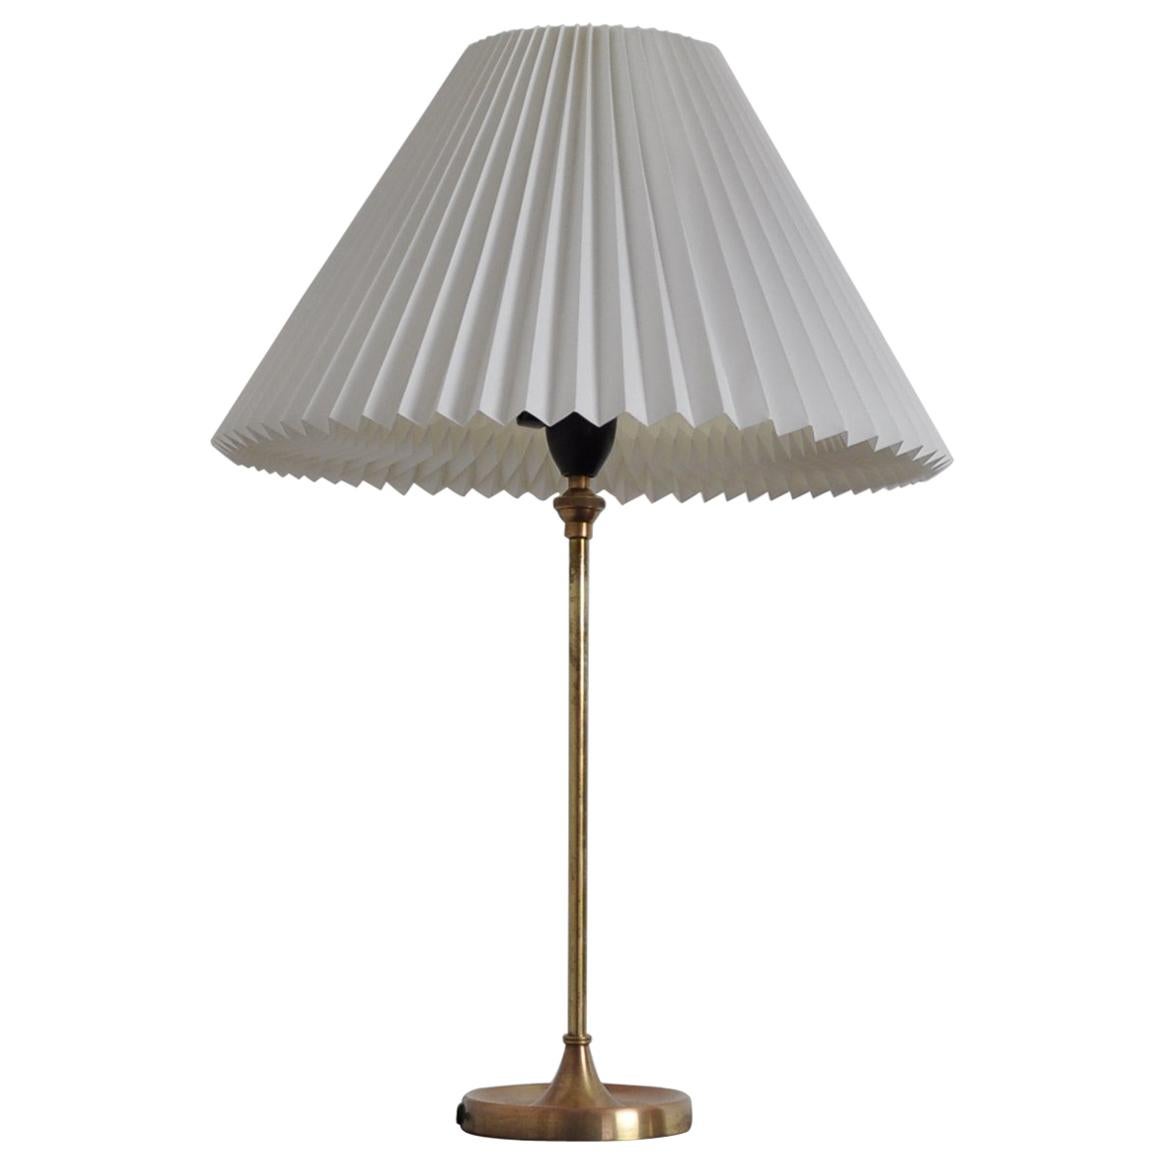 Brass Table Lamp Designed by Esben Klint for Le Klint, 1948